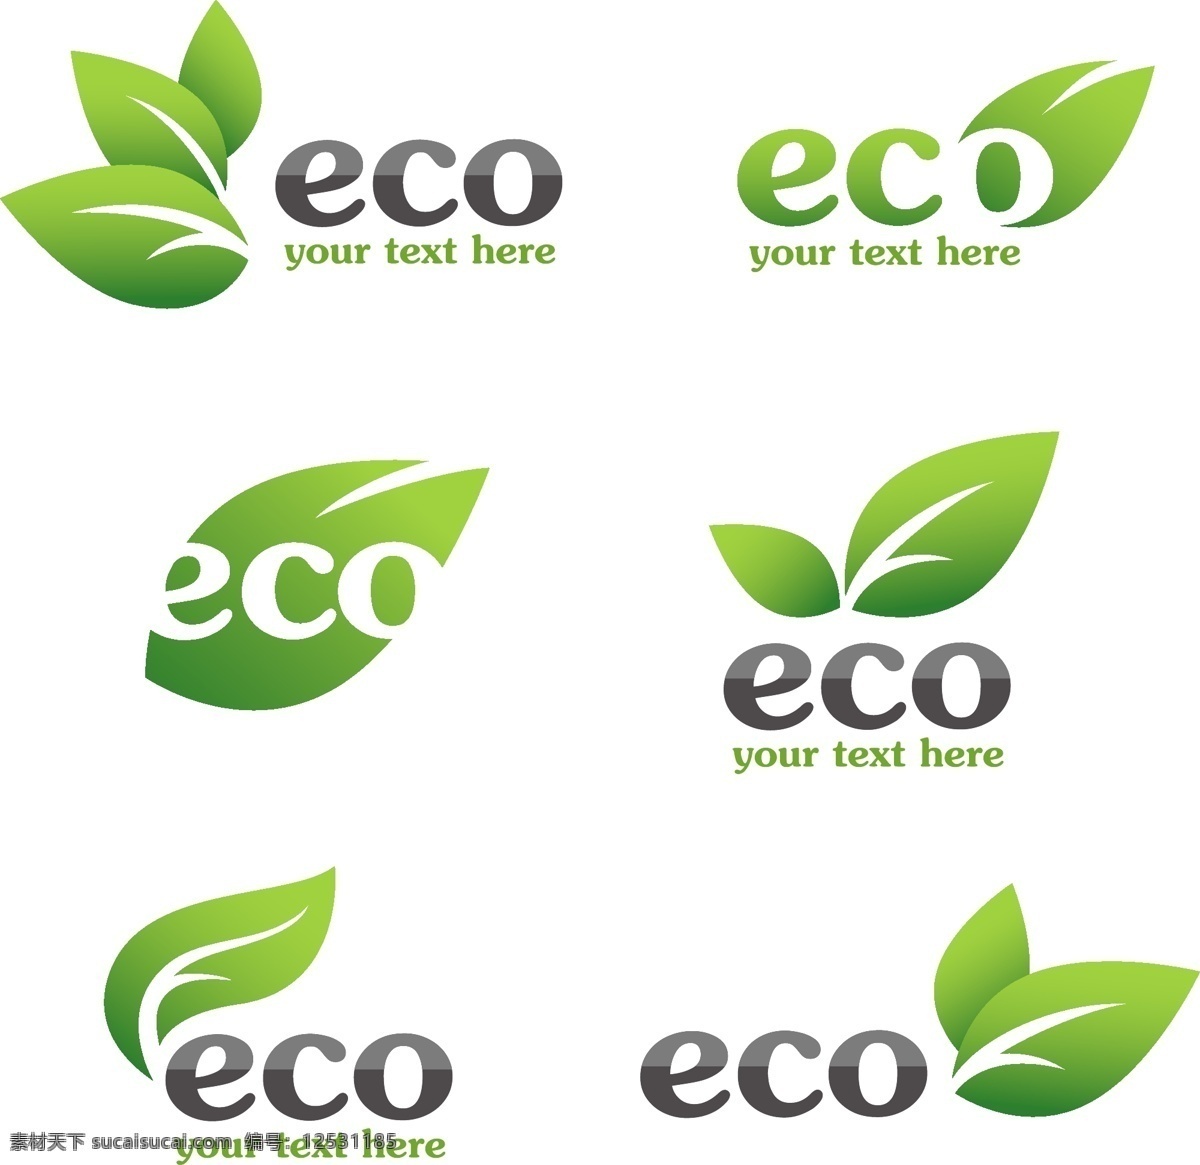 eco标志 eco 标志 矢量 主题 图标 环保 循环 节能 低碳 生态 标贴 标签 吊牌 回收 绿叶 环保标志 绿色 树叶 绿草 小草 草地 青草 贴纸 矢量素材 小图标 标识标志图标 logo